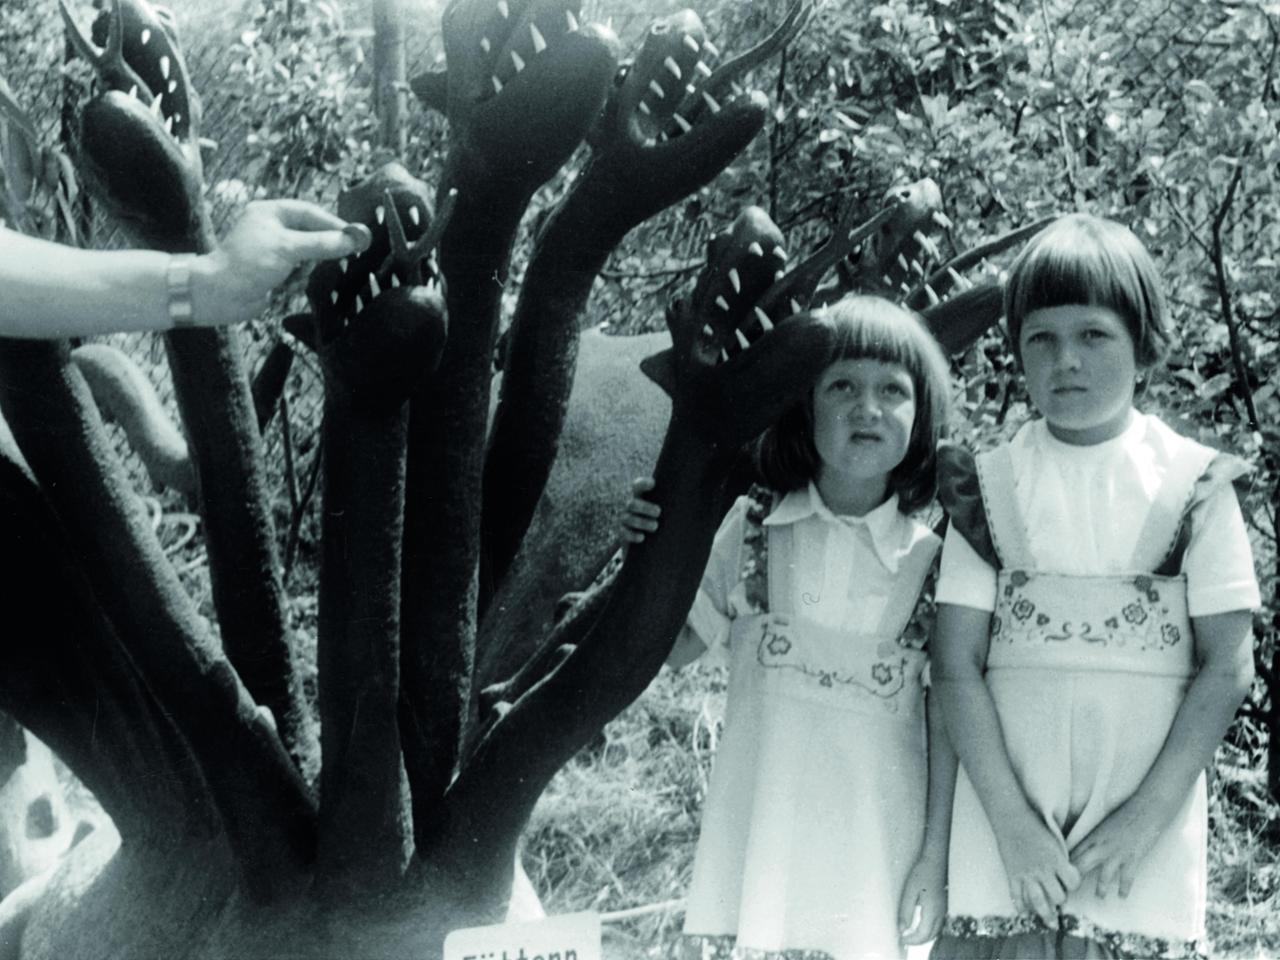 Zwei kleine Mädchen posieren neben dem Modell eines mehrköpfigen Monsters.